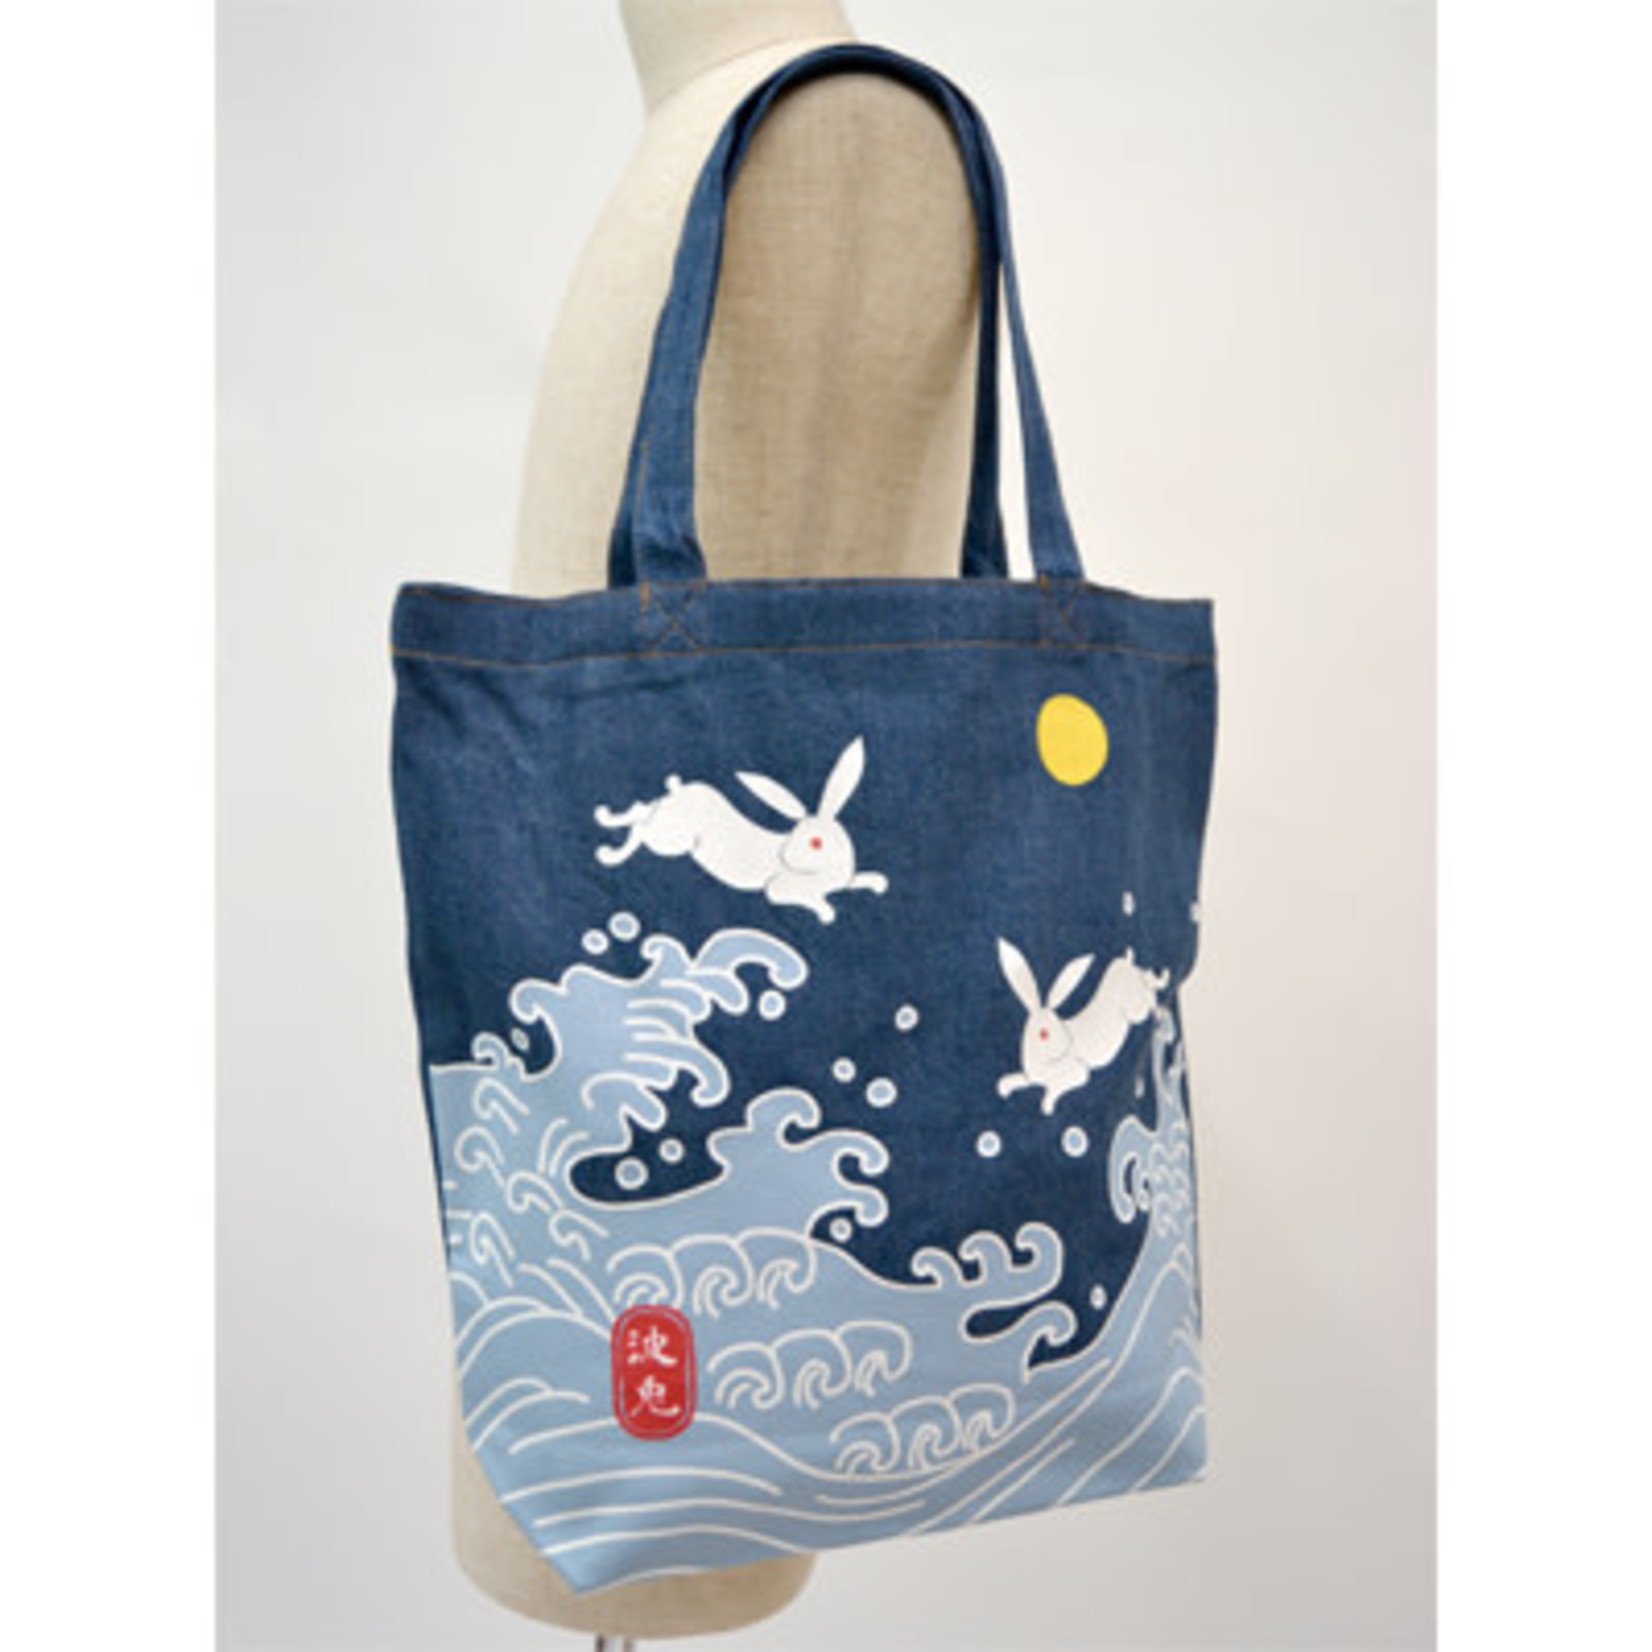 JAPONESQUE Tote Bag - Wave Rabbit 16T5007